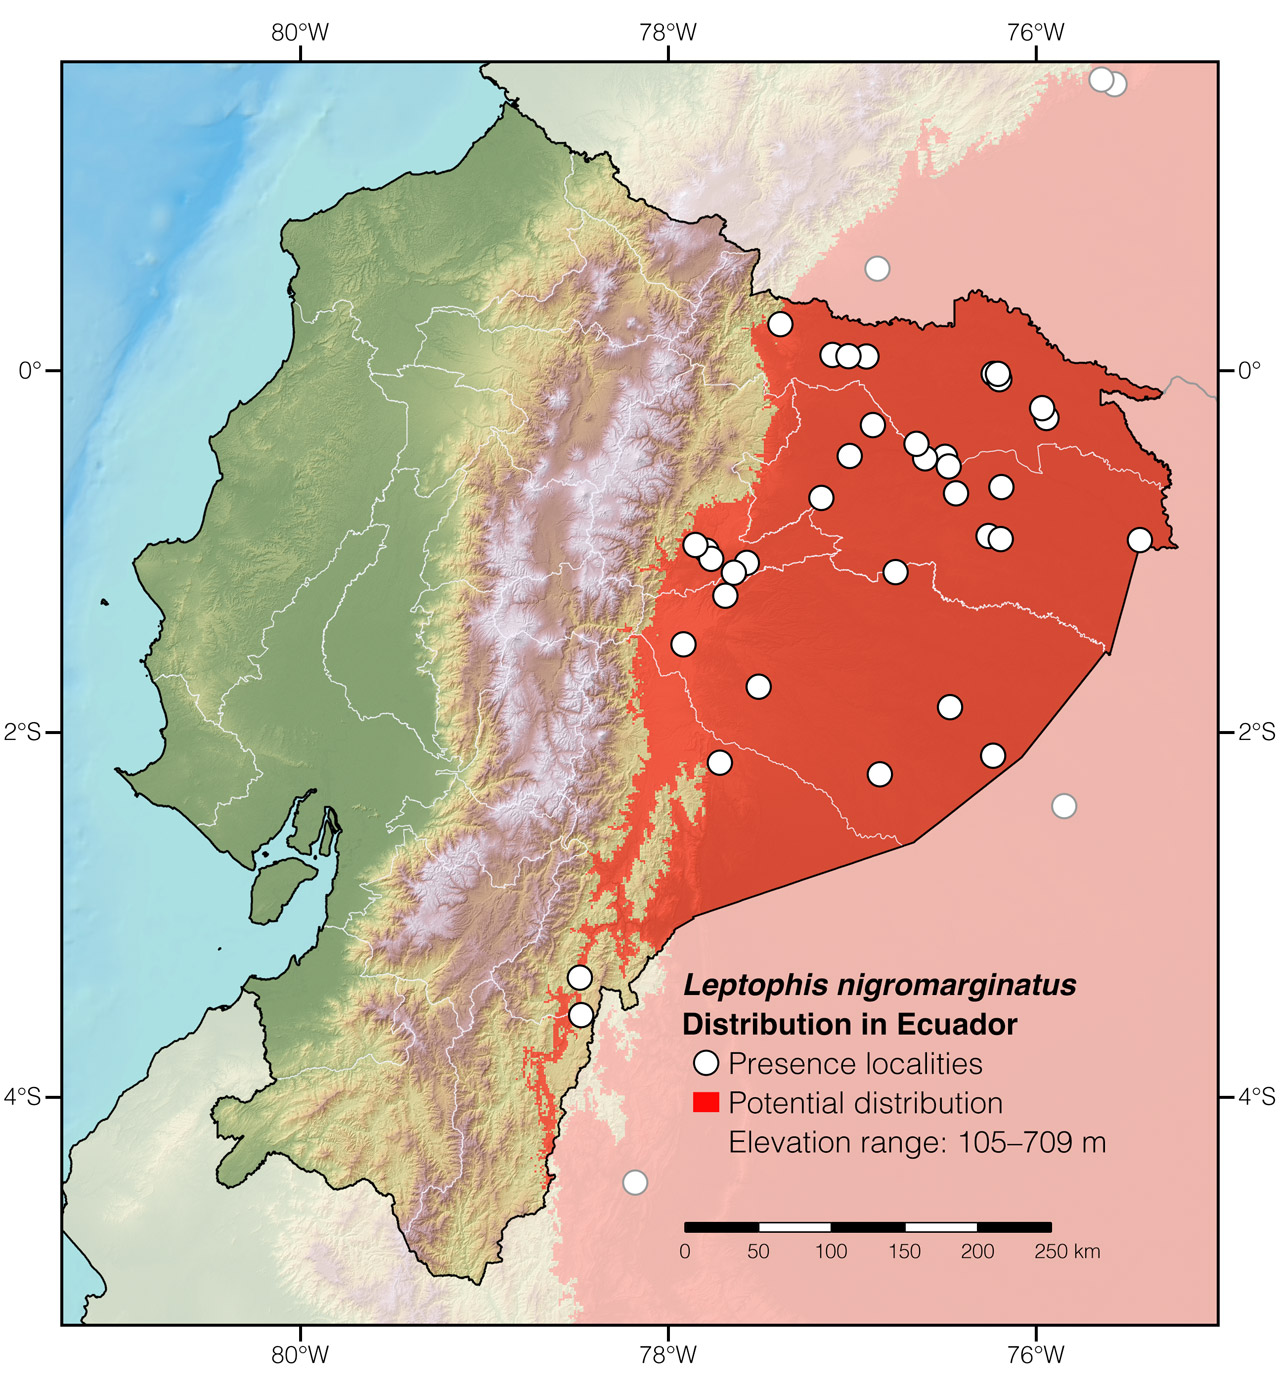 Distribution of Leptophis nigromarginatus in Ecuador